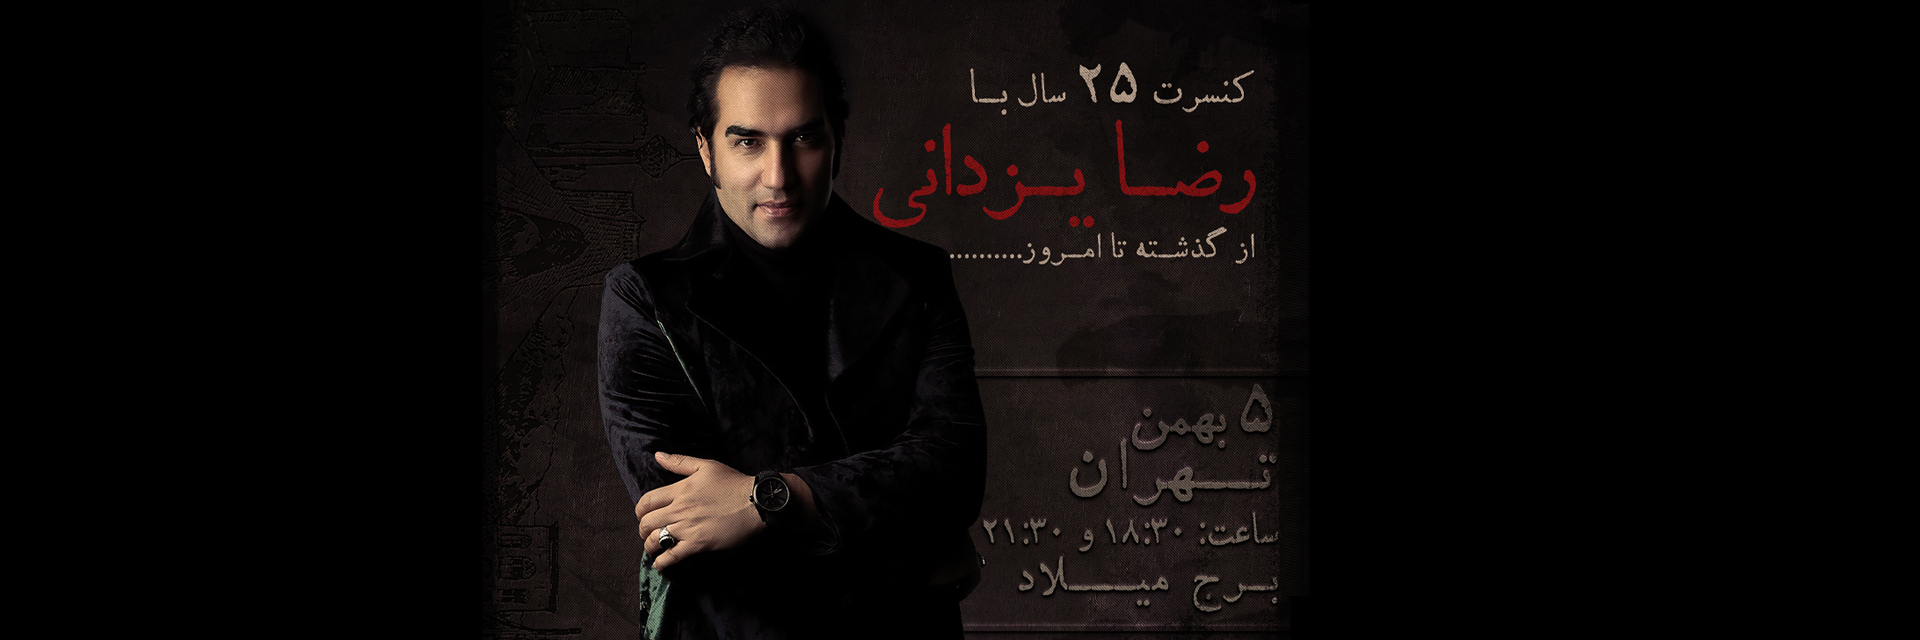 Reza Yazdani - 25 Years With Reza Yazdani - Live in Tehran